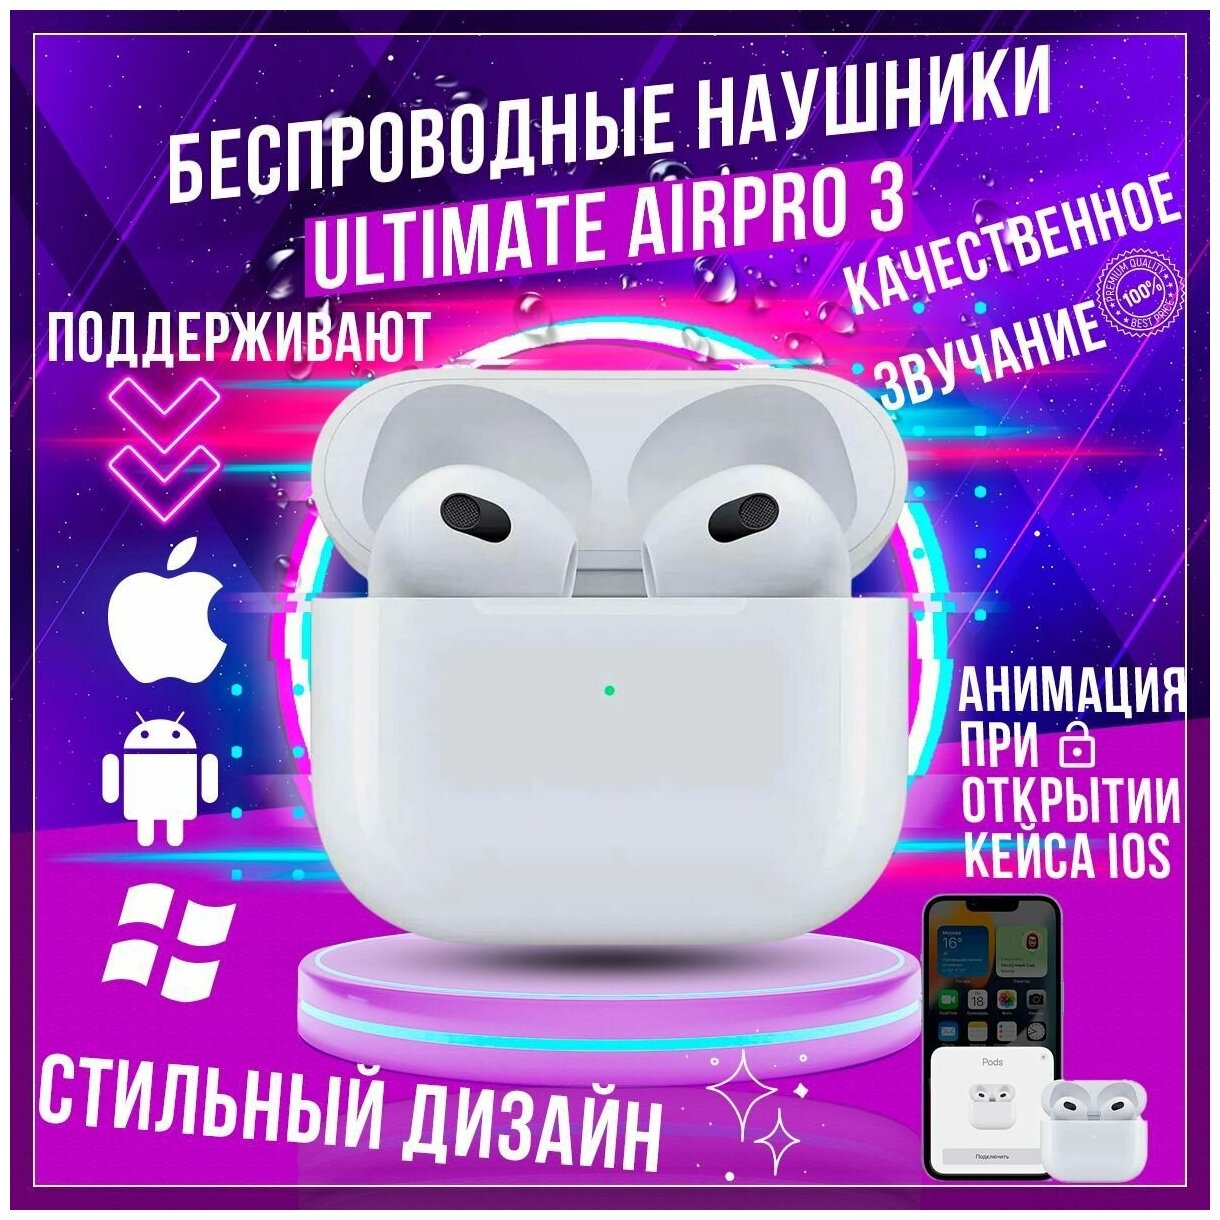 Наушники для iphone Tws Ultimate AIRPRO 3 GEN Беспроводные наушники Bluetooth премиум качества Цвет Белый Apple